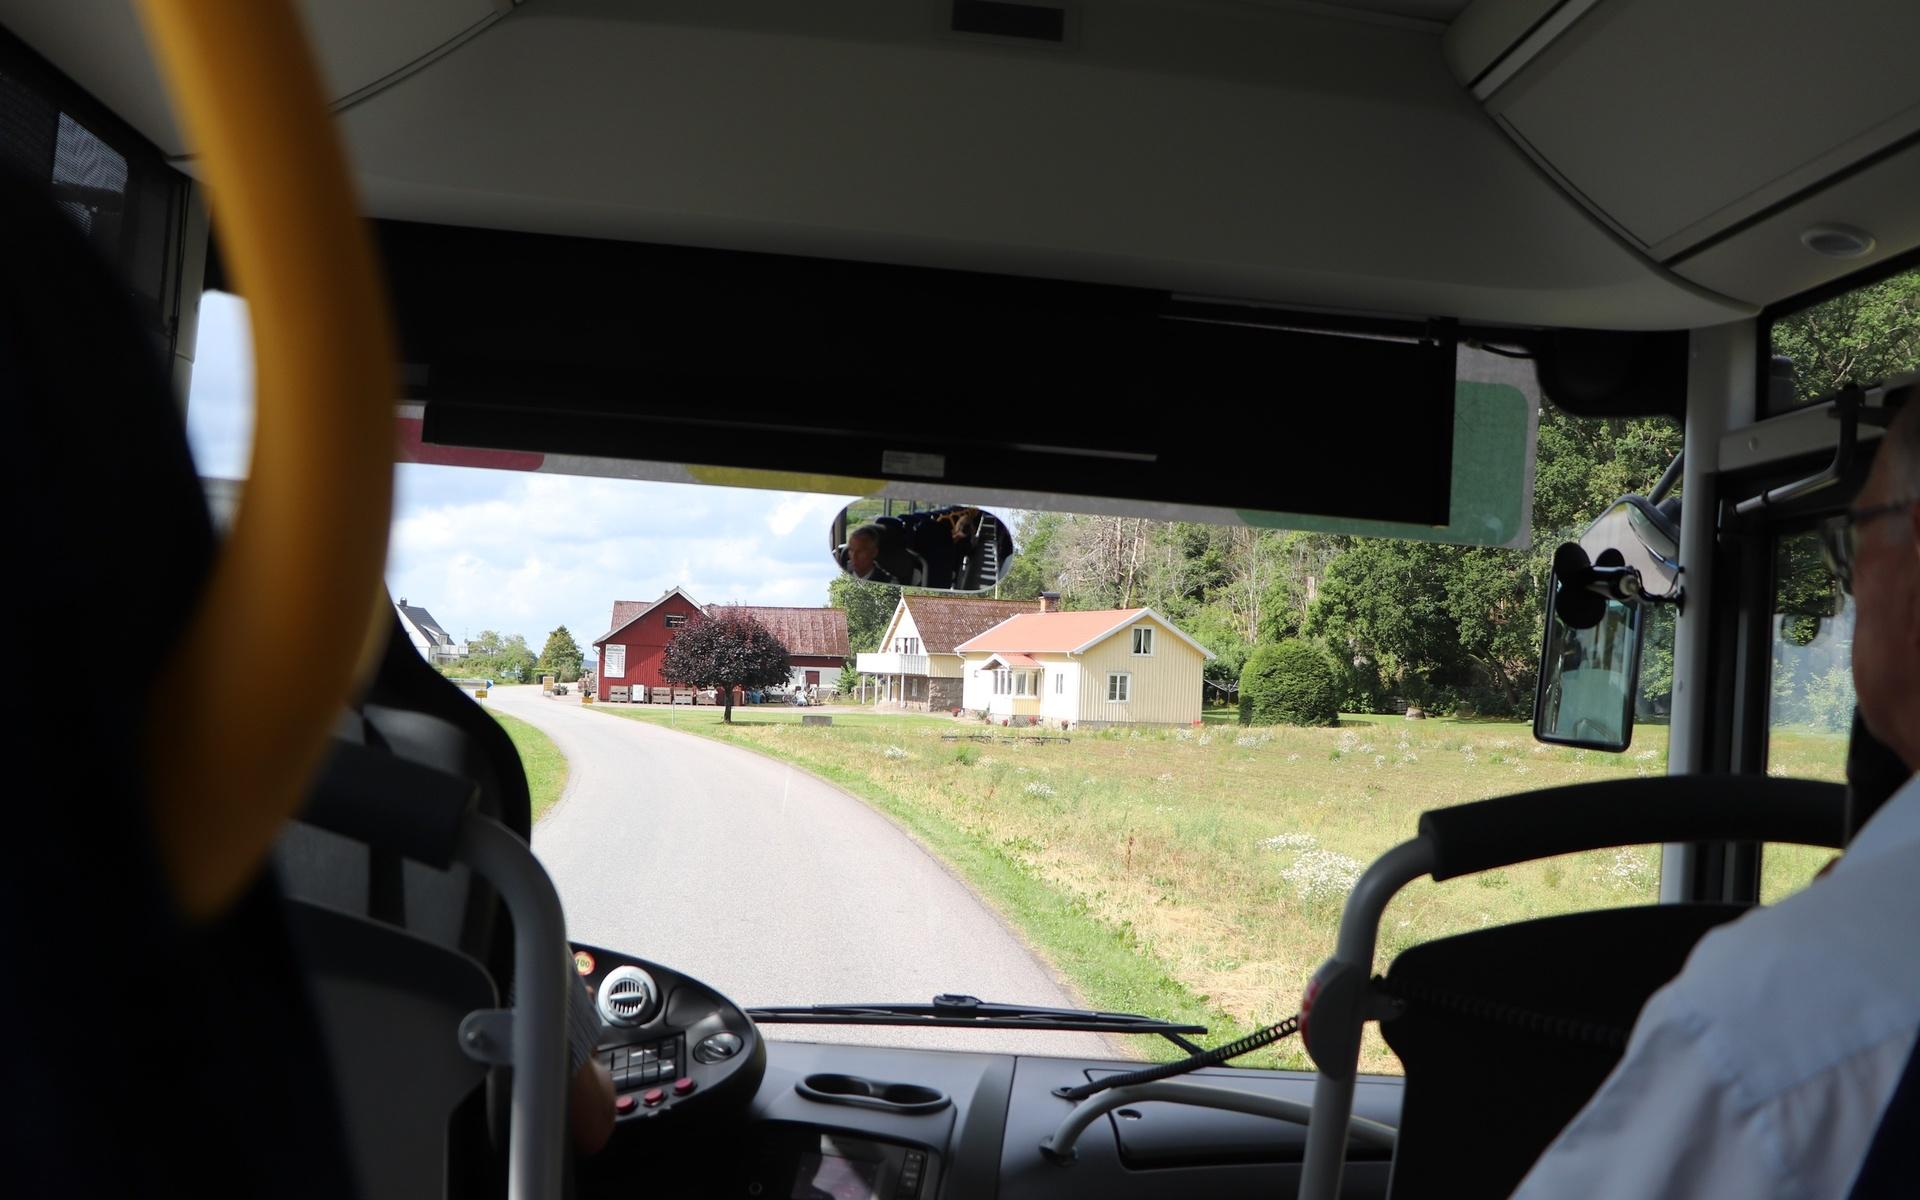 Bussen var snart framme vid Tjolöholm när den passerade pepparrotsodlingen, och Ingvar berättade självklart historien bakom pepparroten